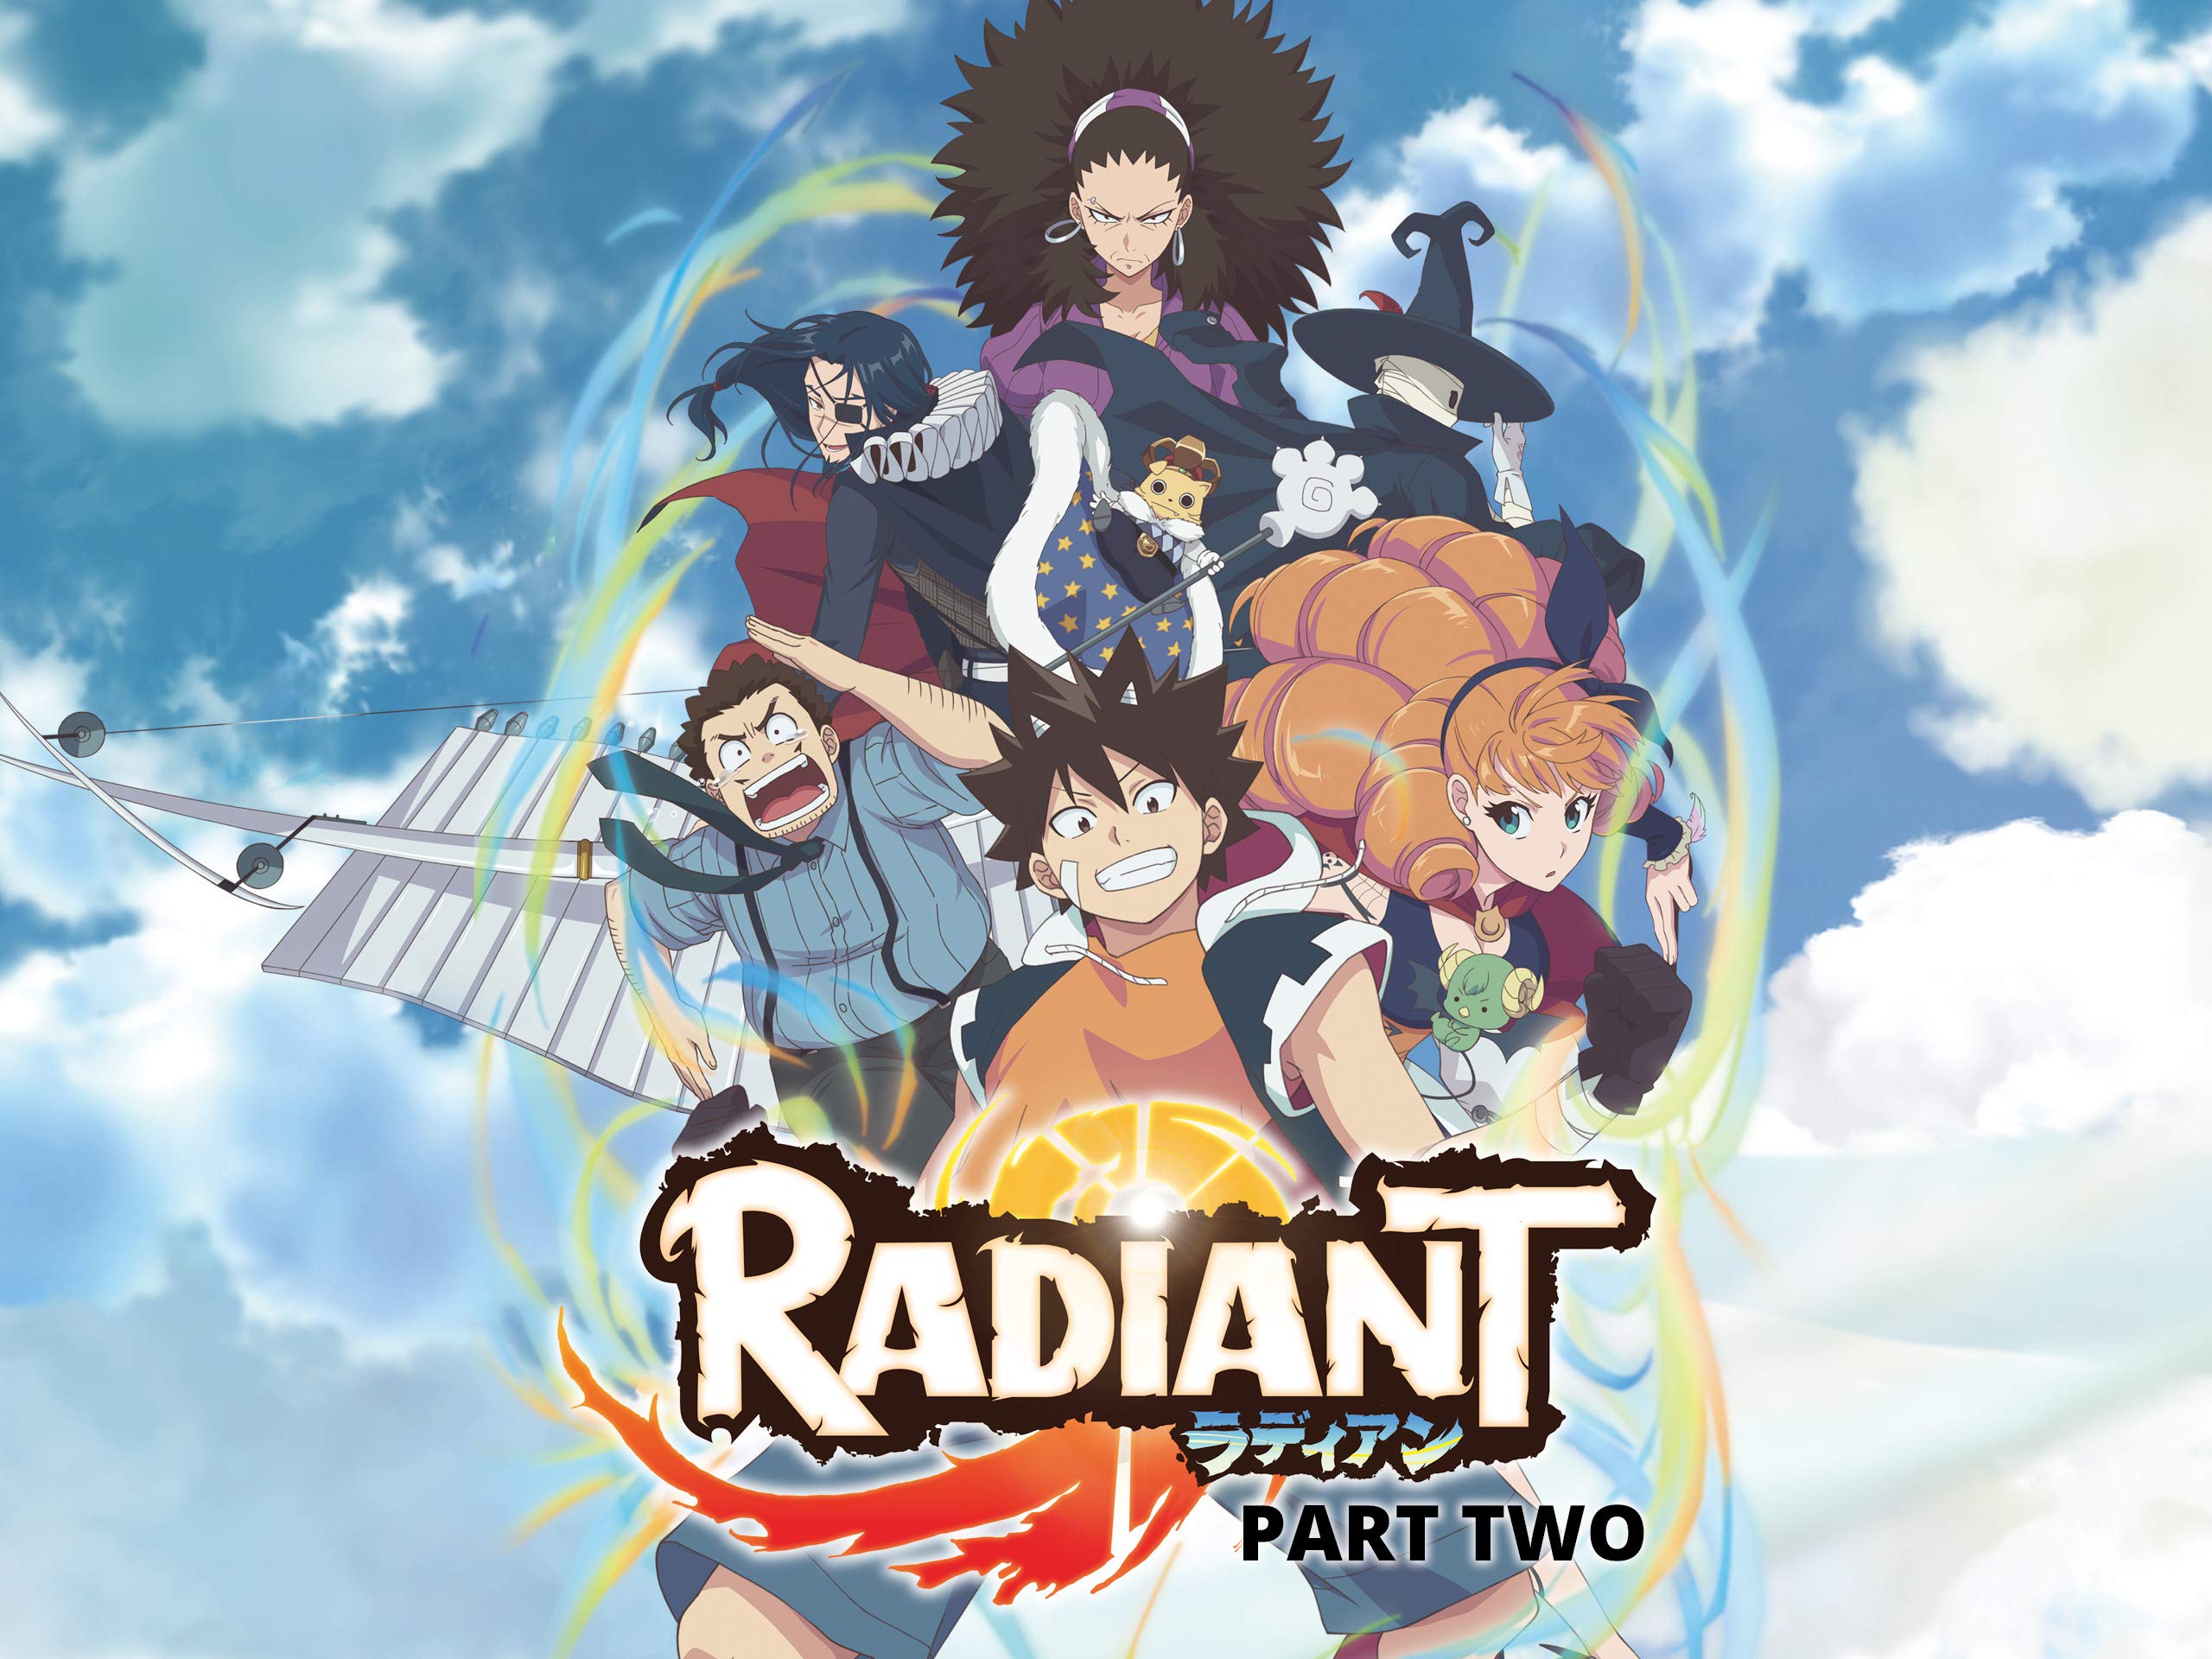 radiant season 3 manga